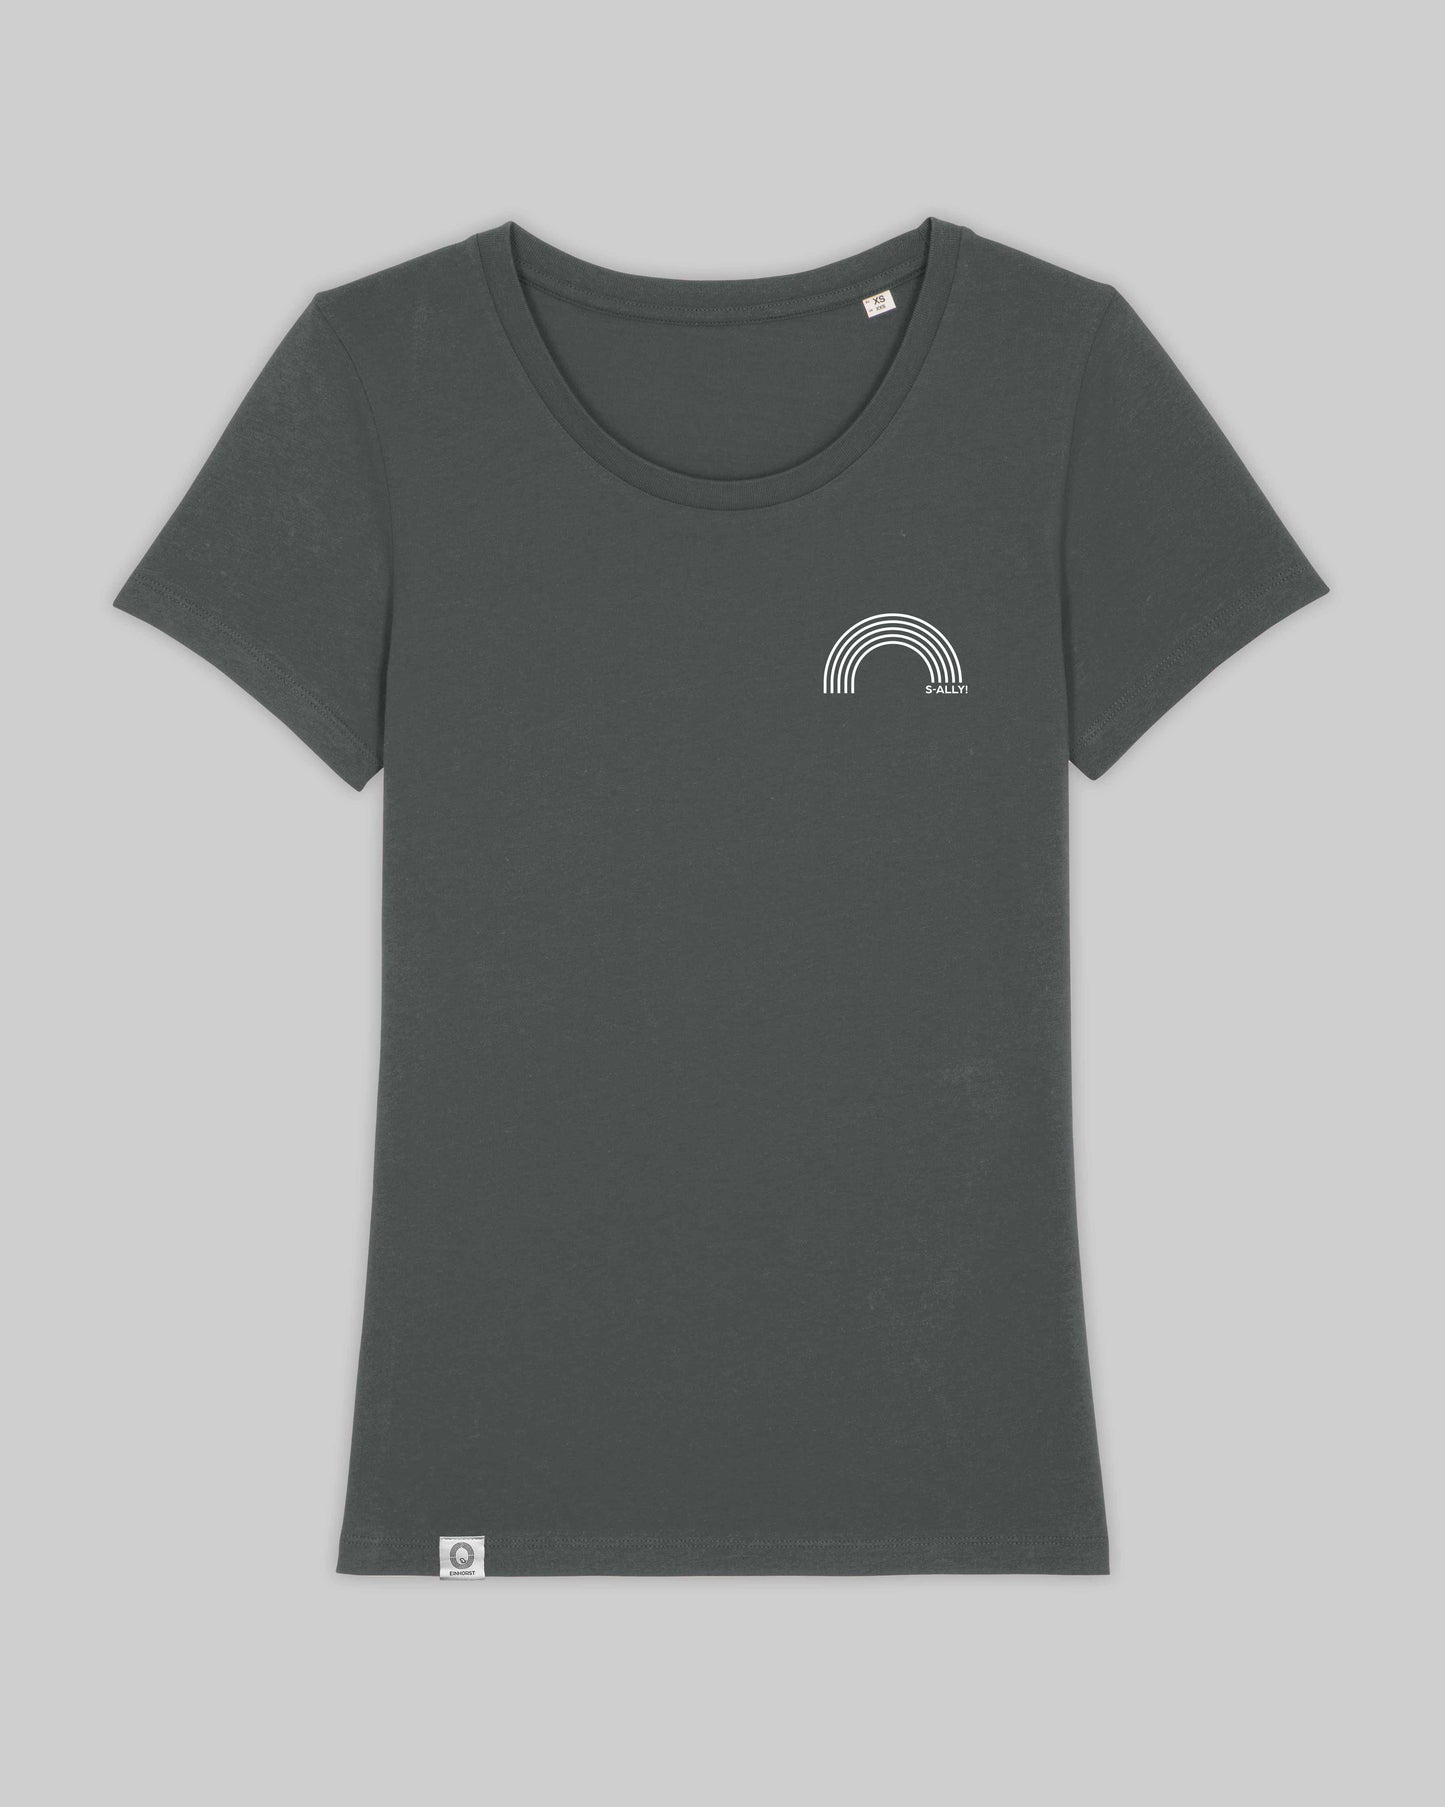 EINHORST® Organic Shirt tailliert in "Anthracite" mit dem Motiv "s-ally Regenbogen" in der Kombination weißer Regenbogen mit weißer Schrift, Bild von Shirt von vorne